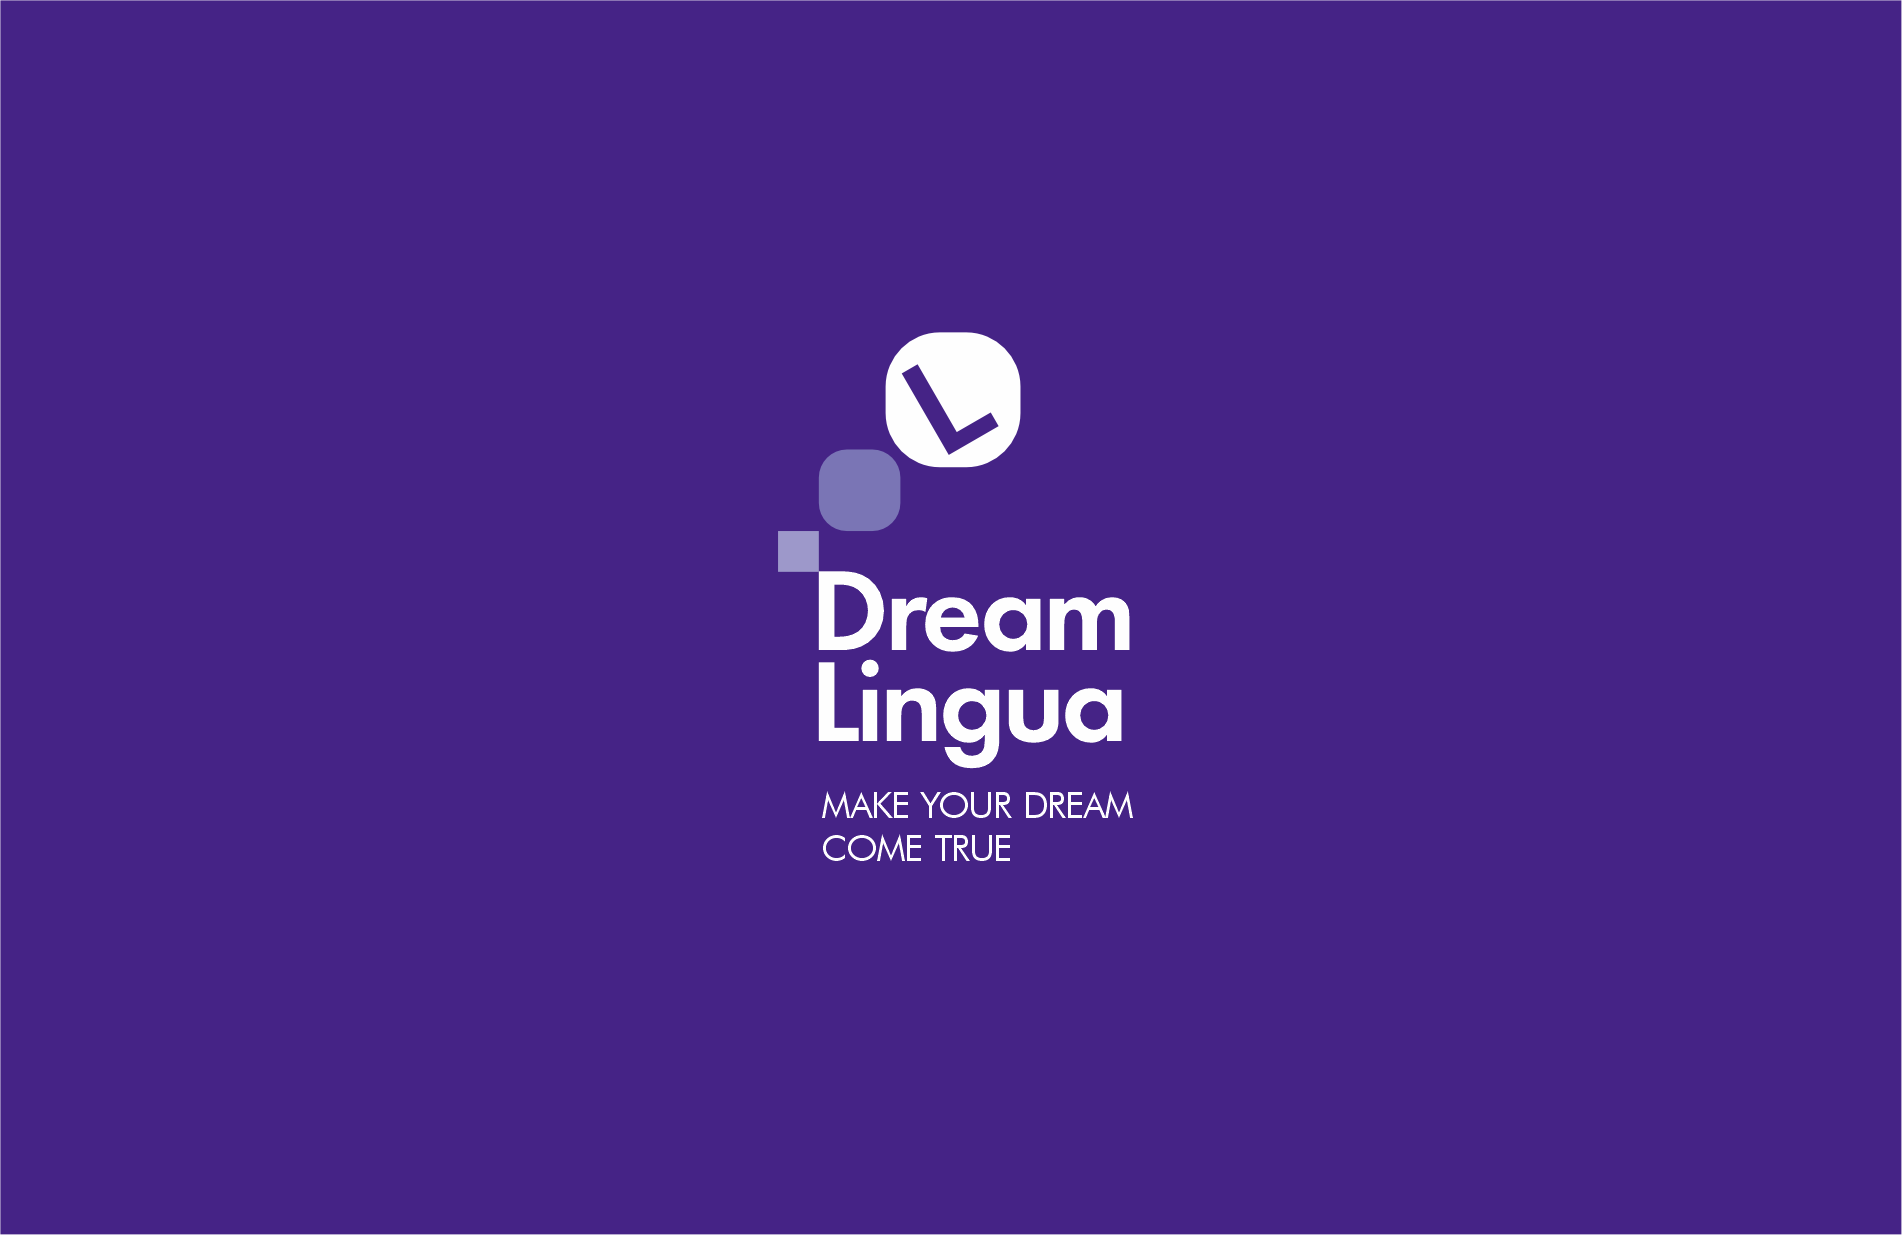 Dreamlingua